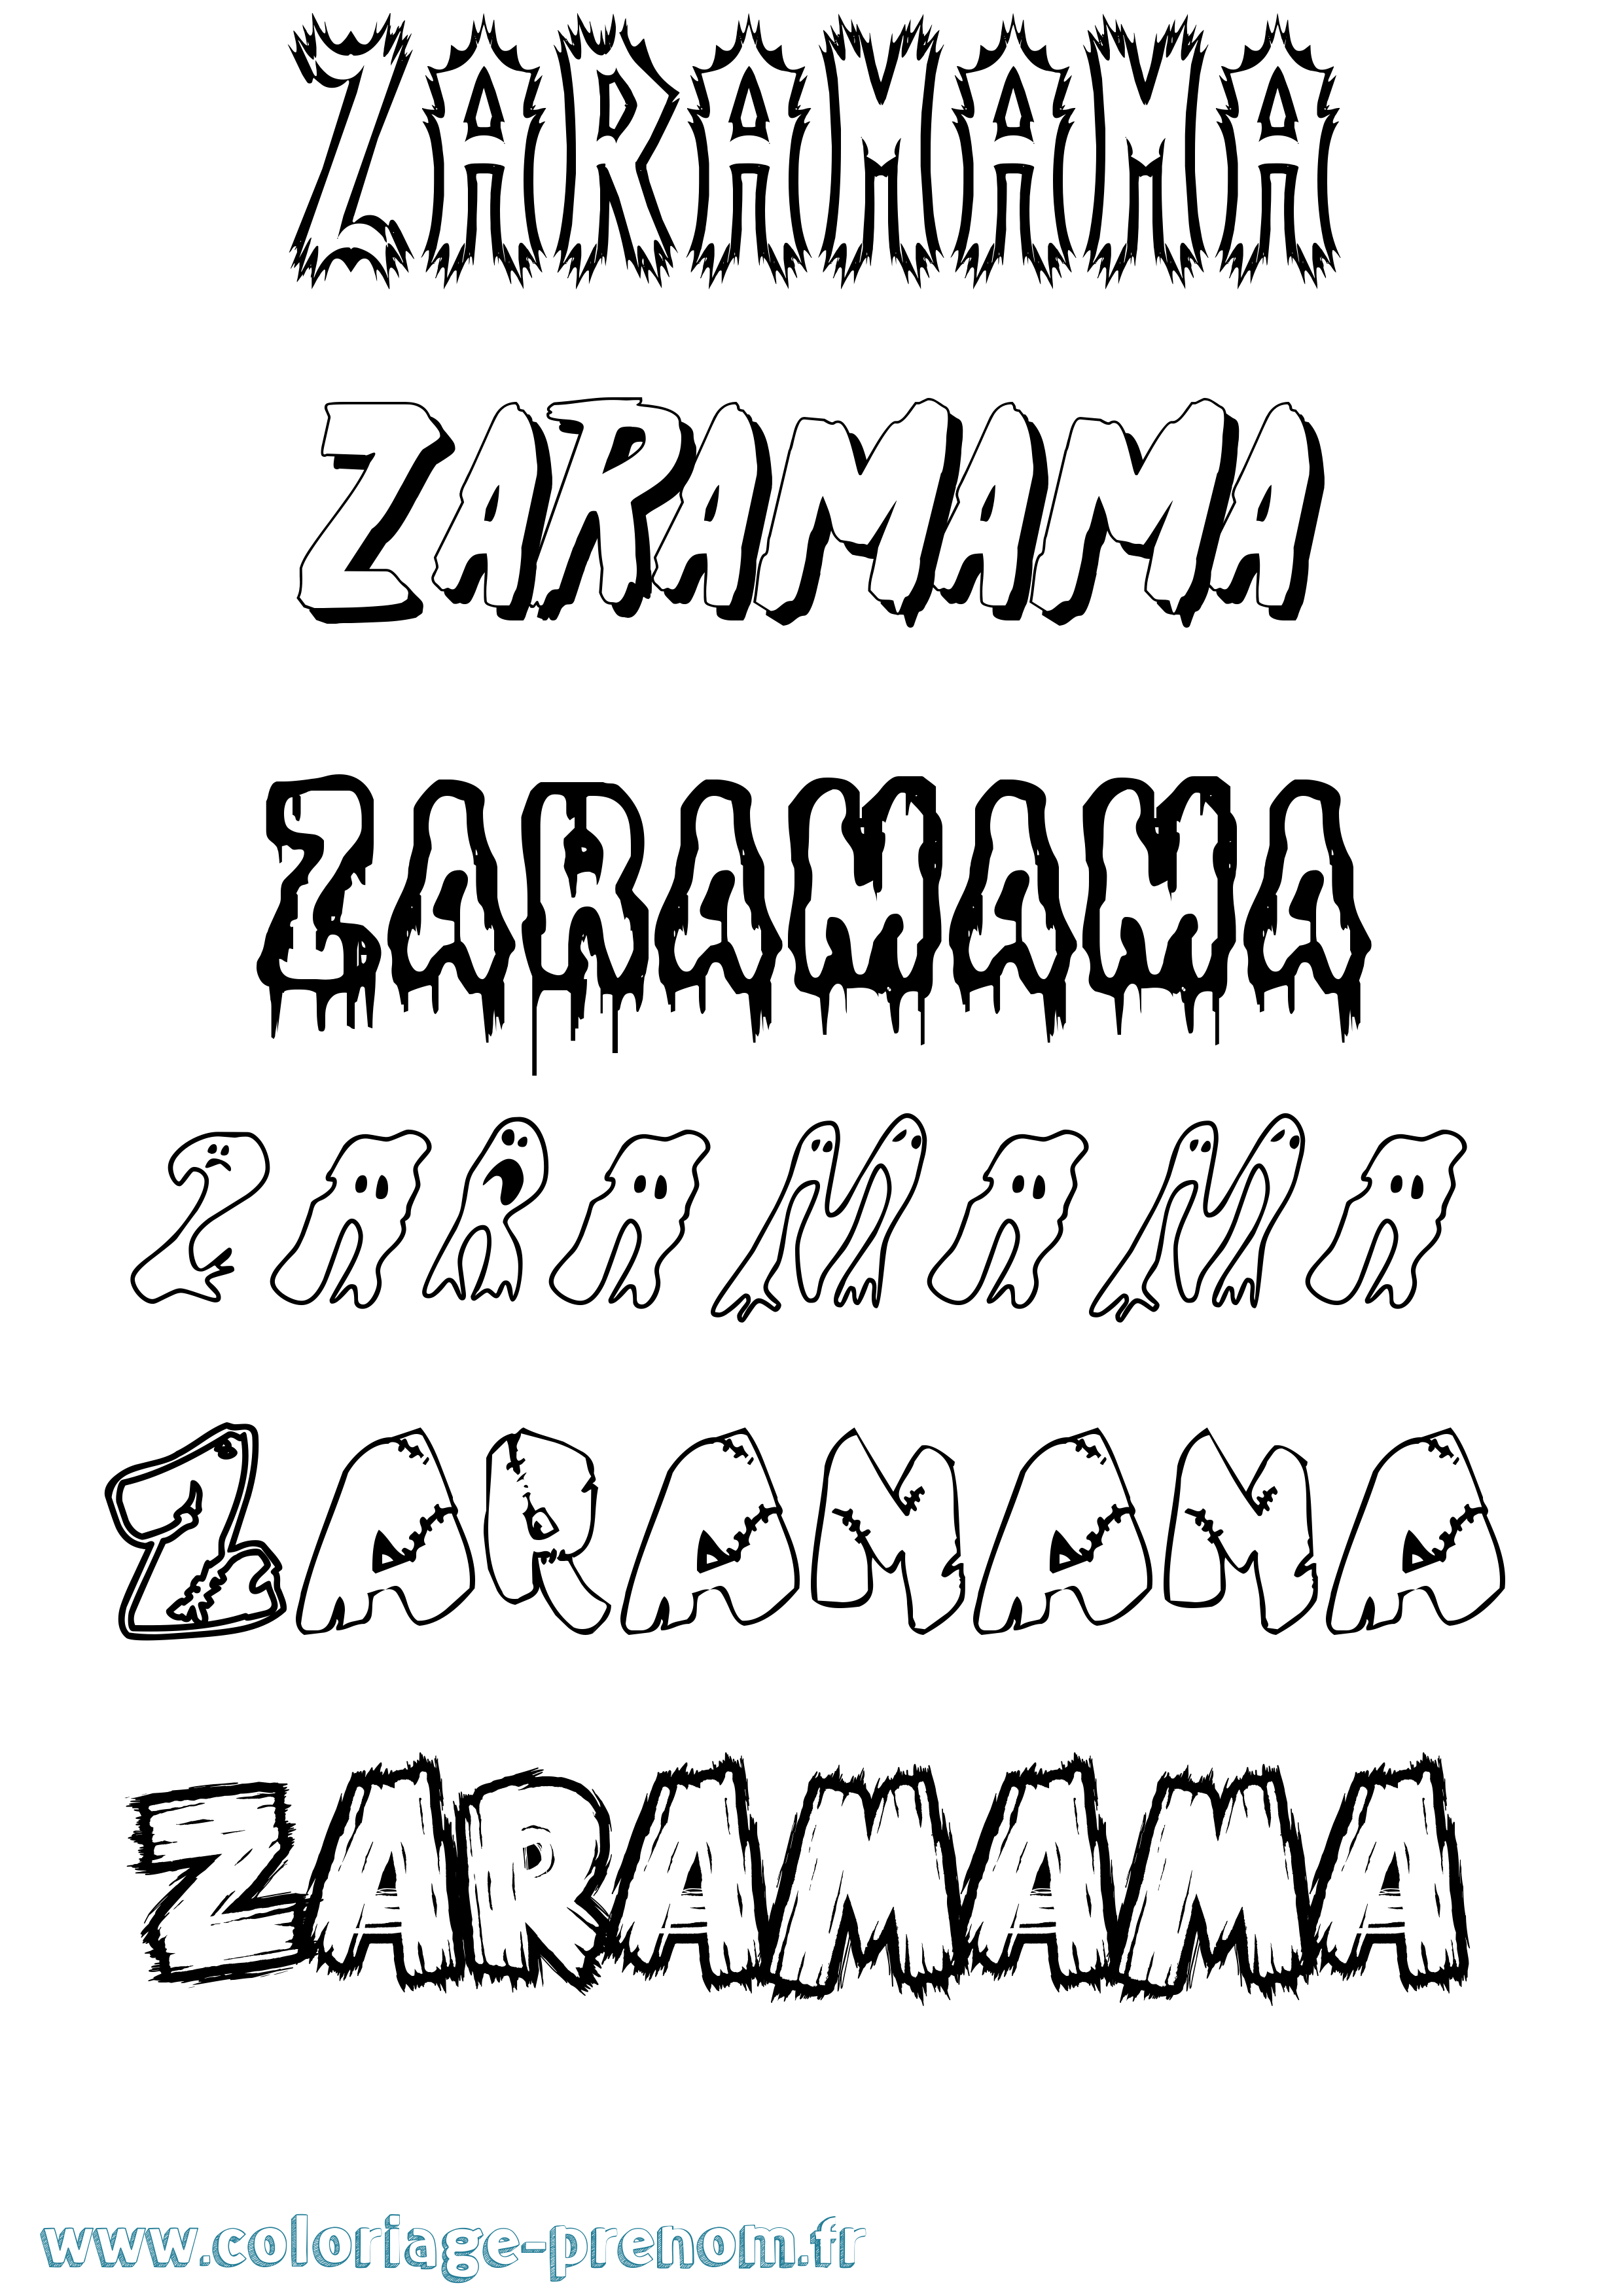 Coloriage prénom Zaramama Frisson